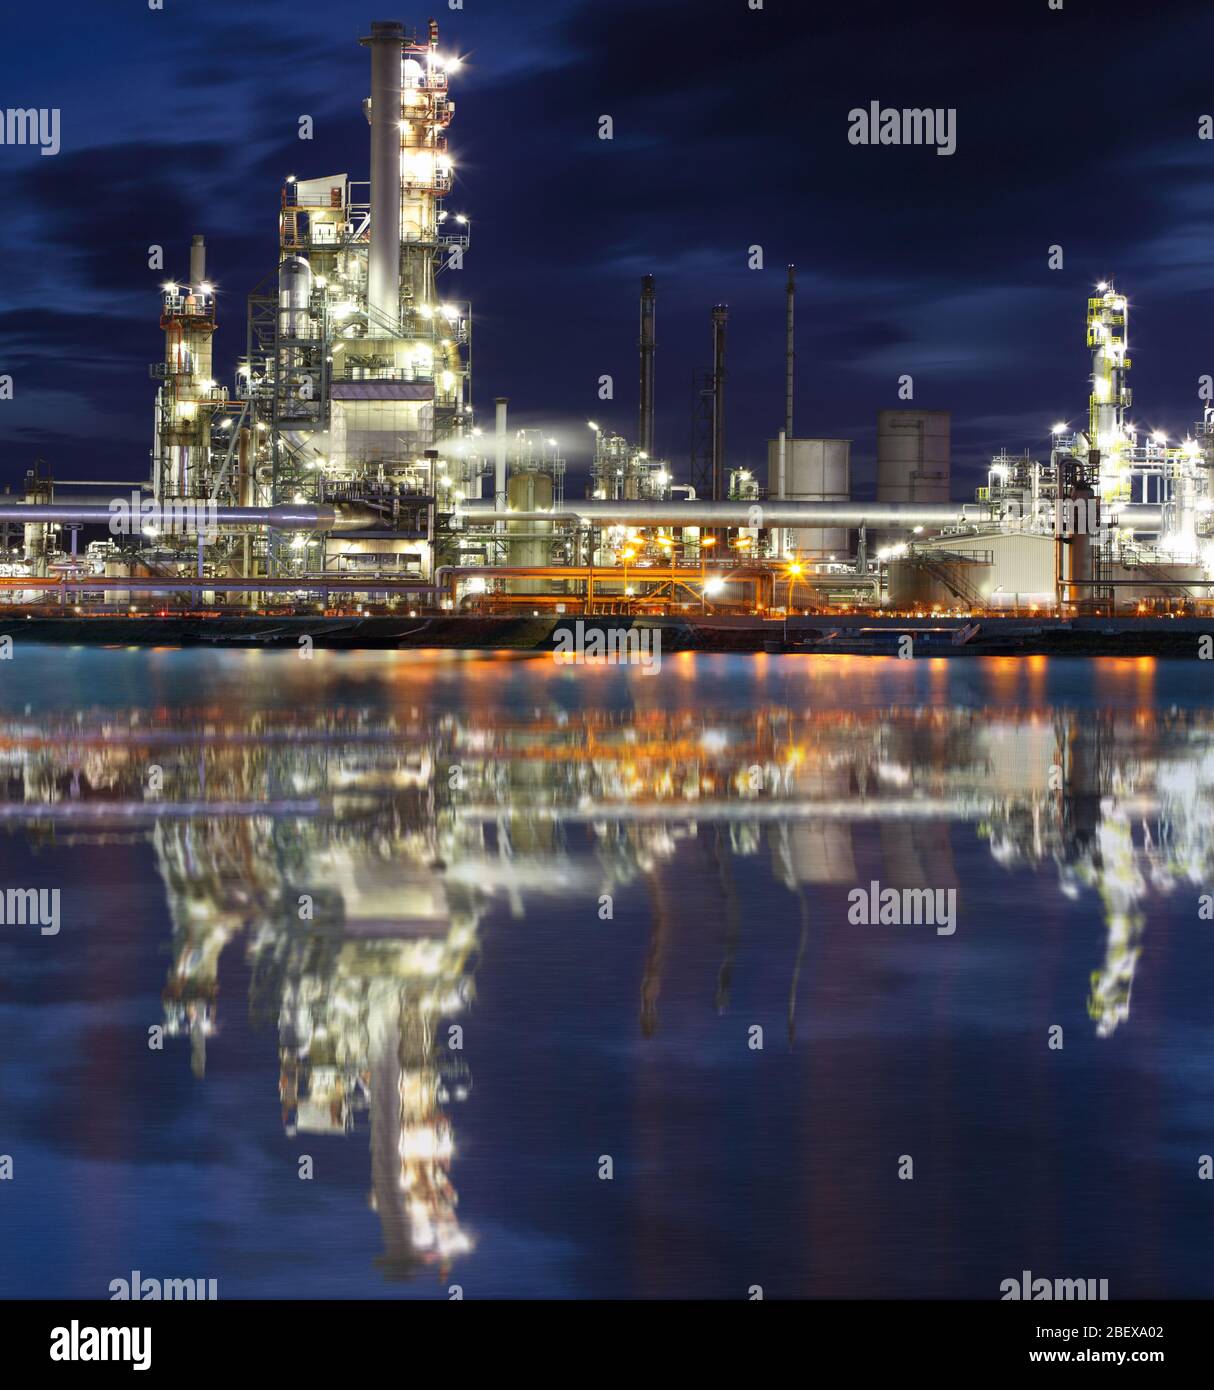 Raffinerie d'huile végétale industrielle dans la nuit Banque D'Images